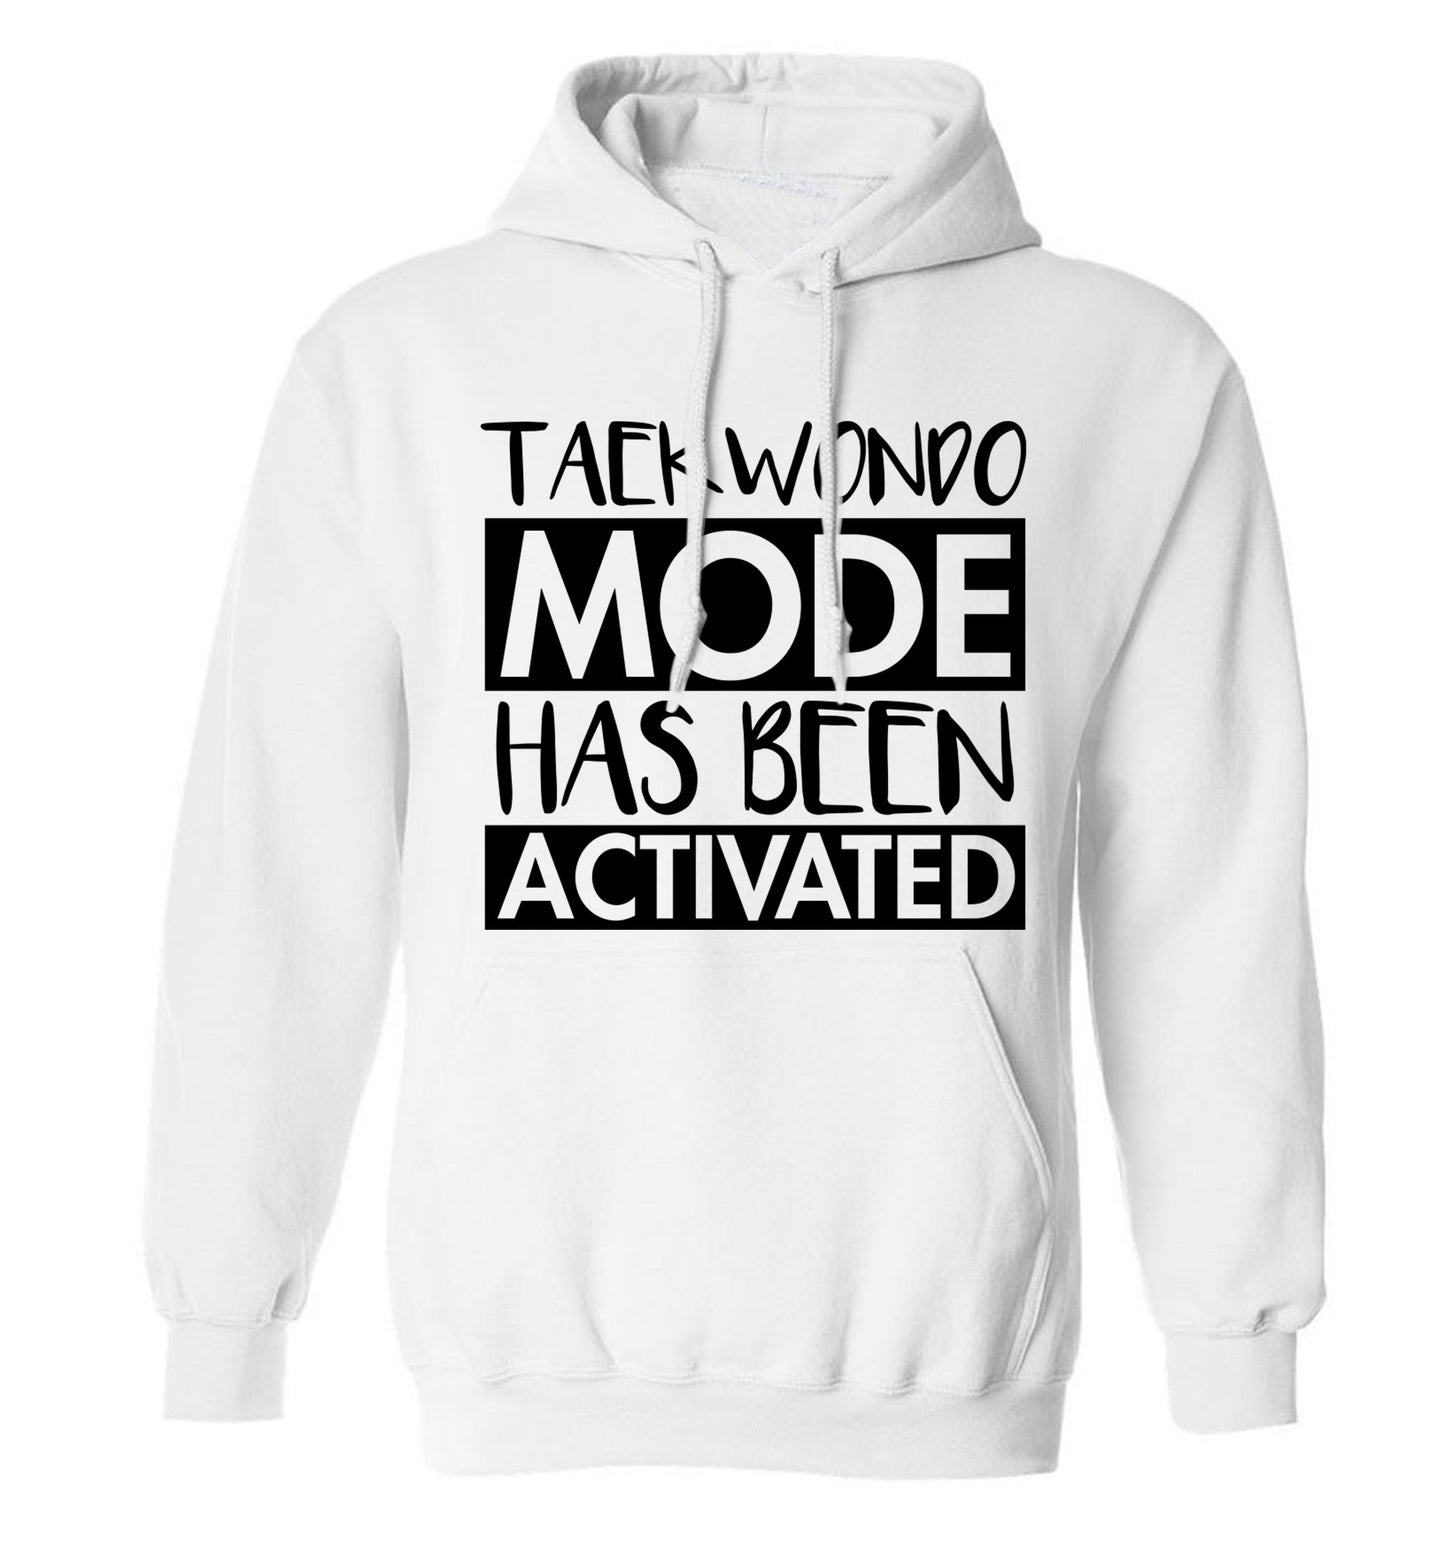 Taekwondo mode activated adults unisex white hoodie 2XL